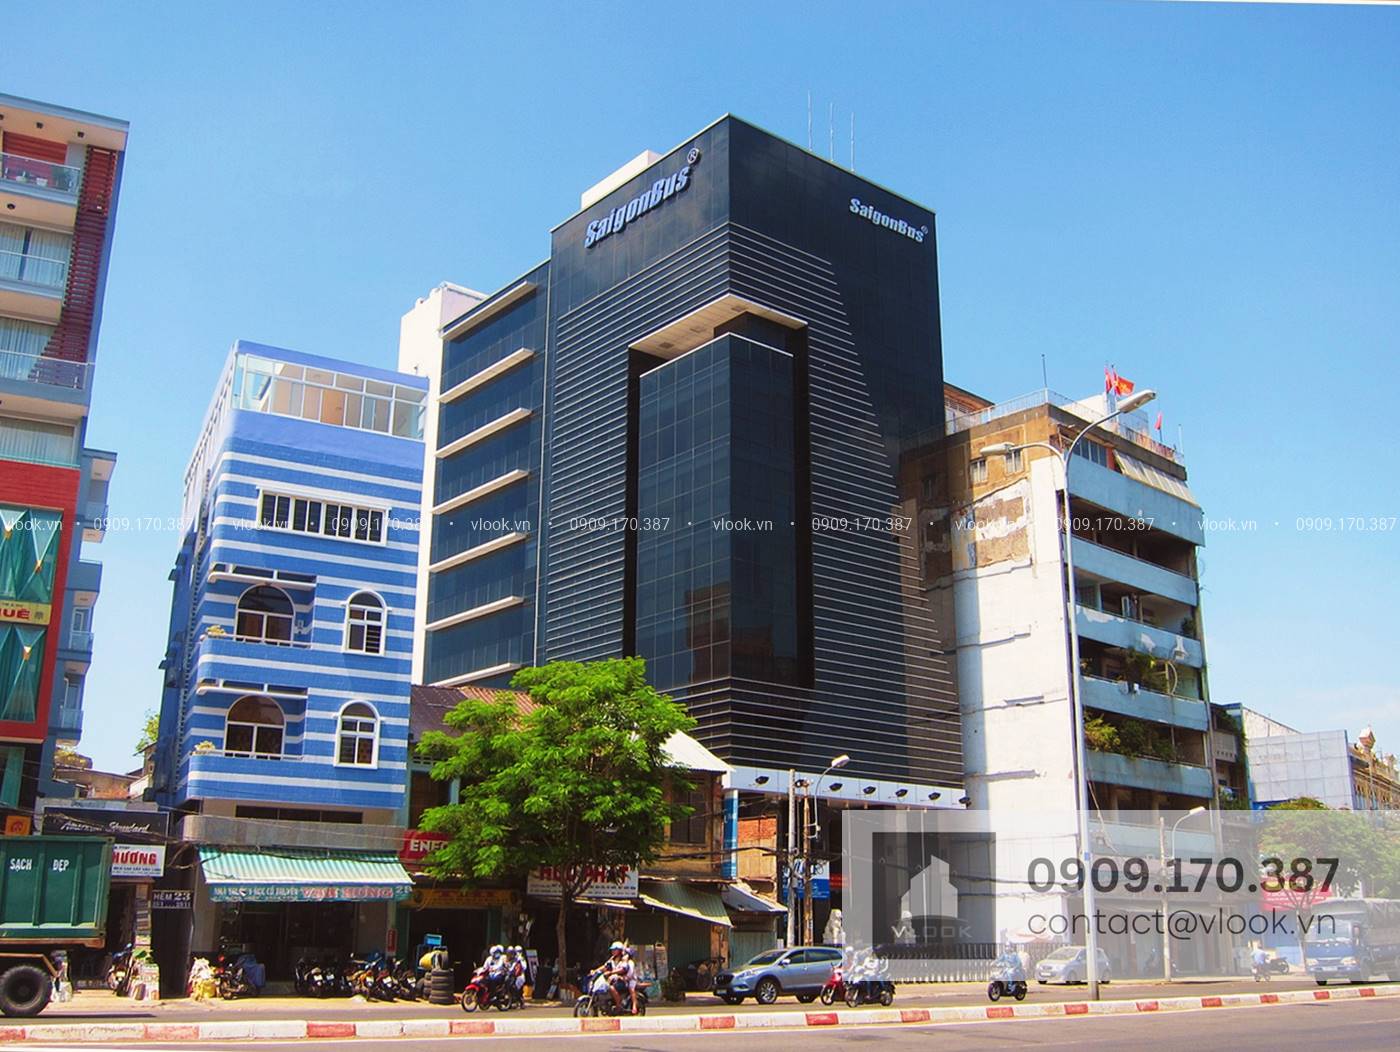 Saigonbus Building - 39 Hải Thượng Lãn Ông - Văn phòng cho thuê Quận 5 - vlook.vn - Hotline 0909170387